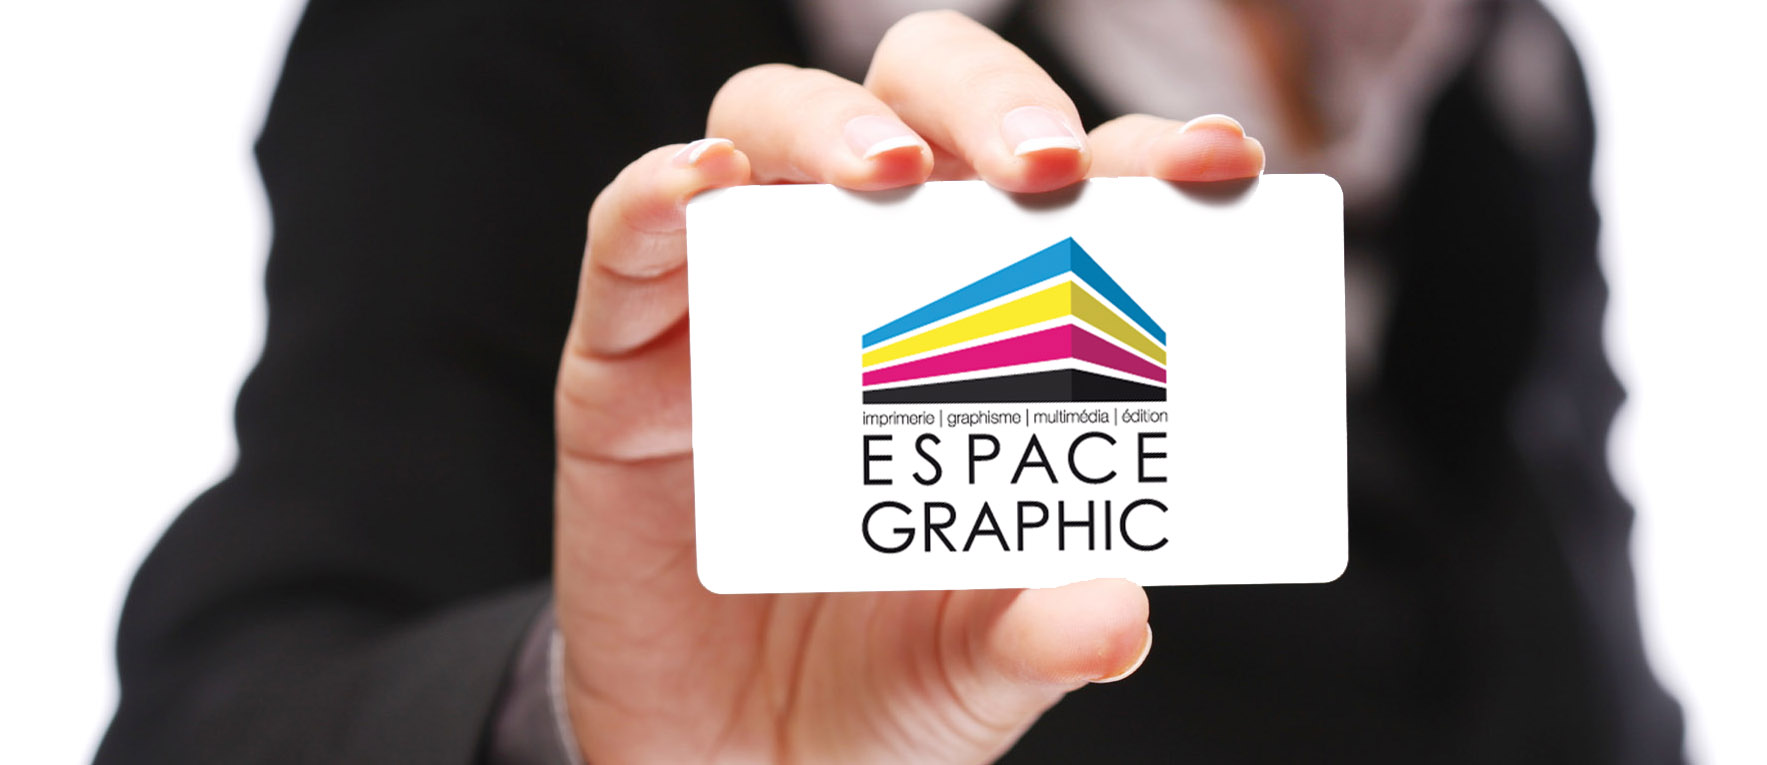 Meilleur prix impression de cartes de visite Espace Graphic Lausanne